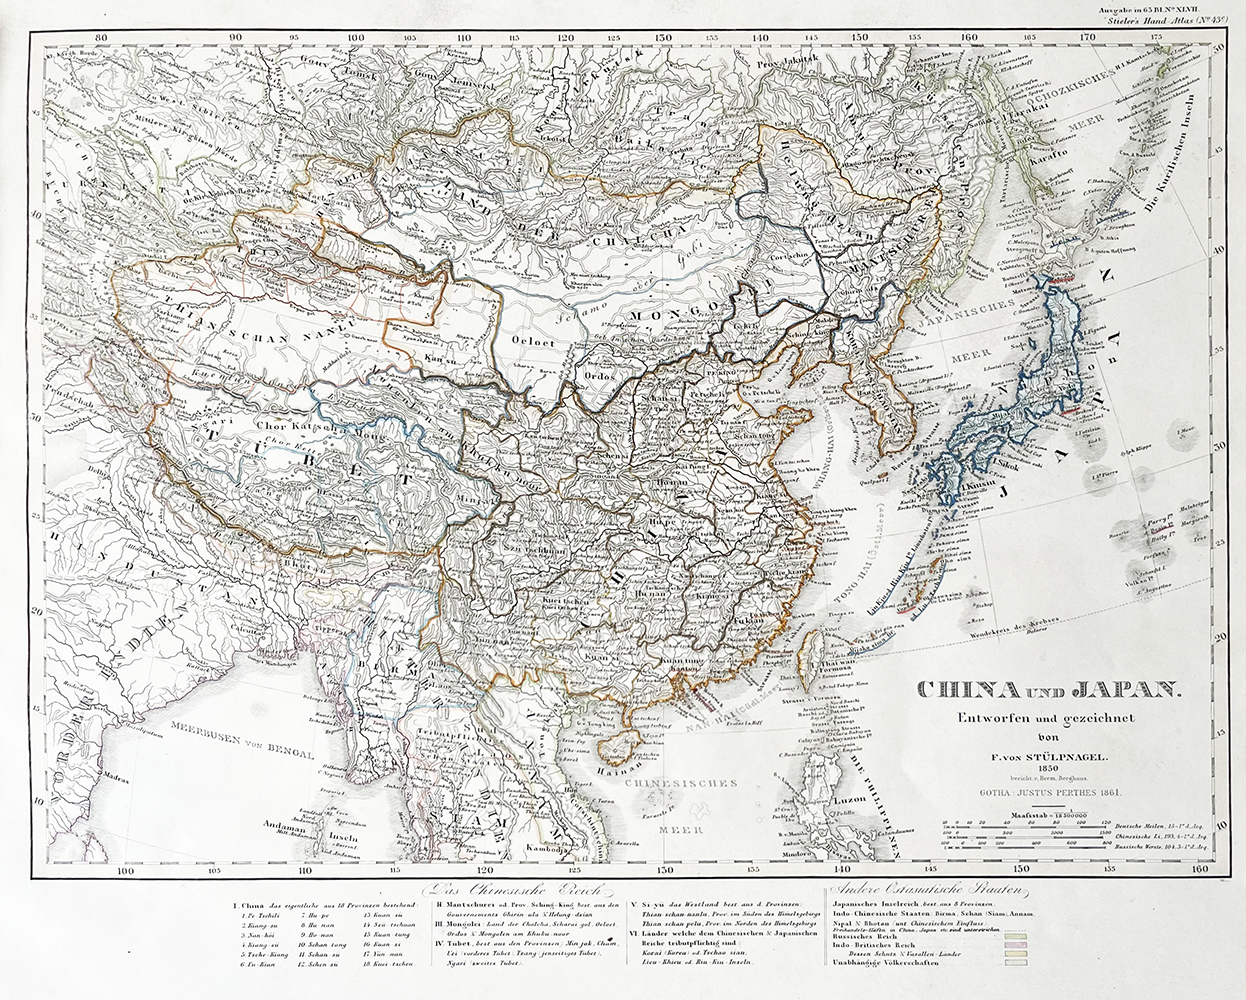 Купить карту Штюльпнагеля (Карта Китая и Японии)